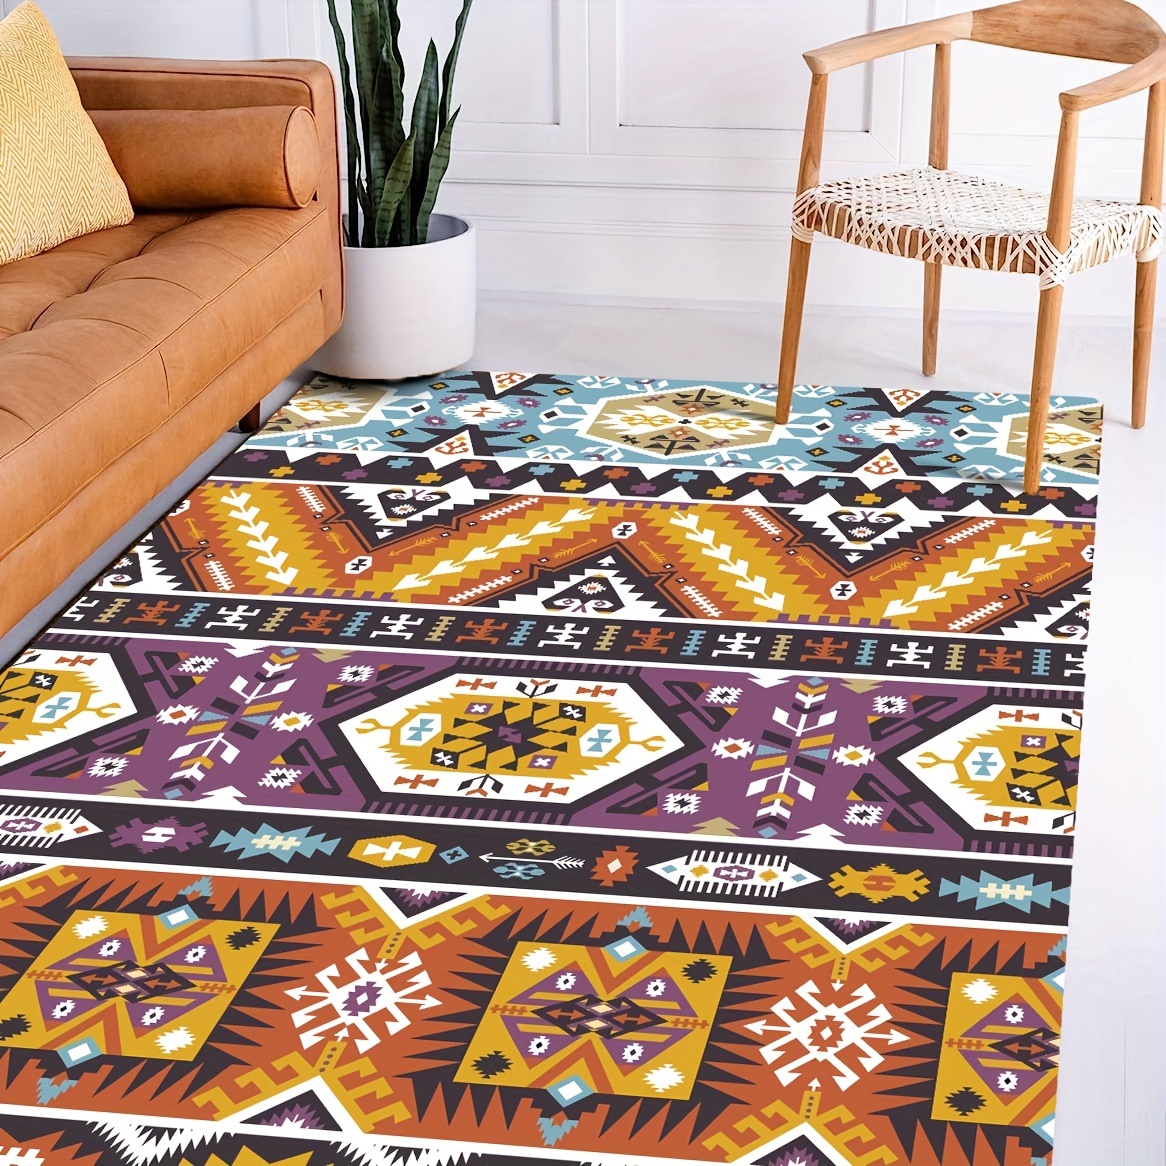 SAFAVIEH - Tapete de estilo marroquí bohemio con diseño tribal de la  colección Tulum para colocar en comedor, recibidor, vestíbulo, sala de  estar o